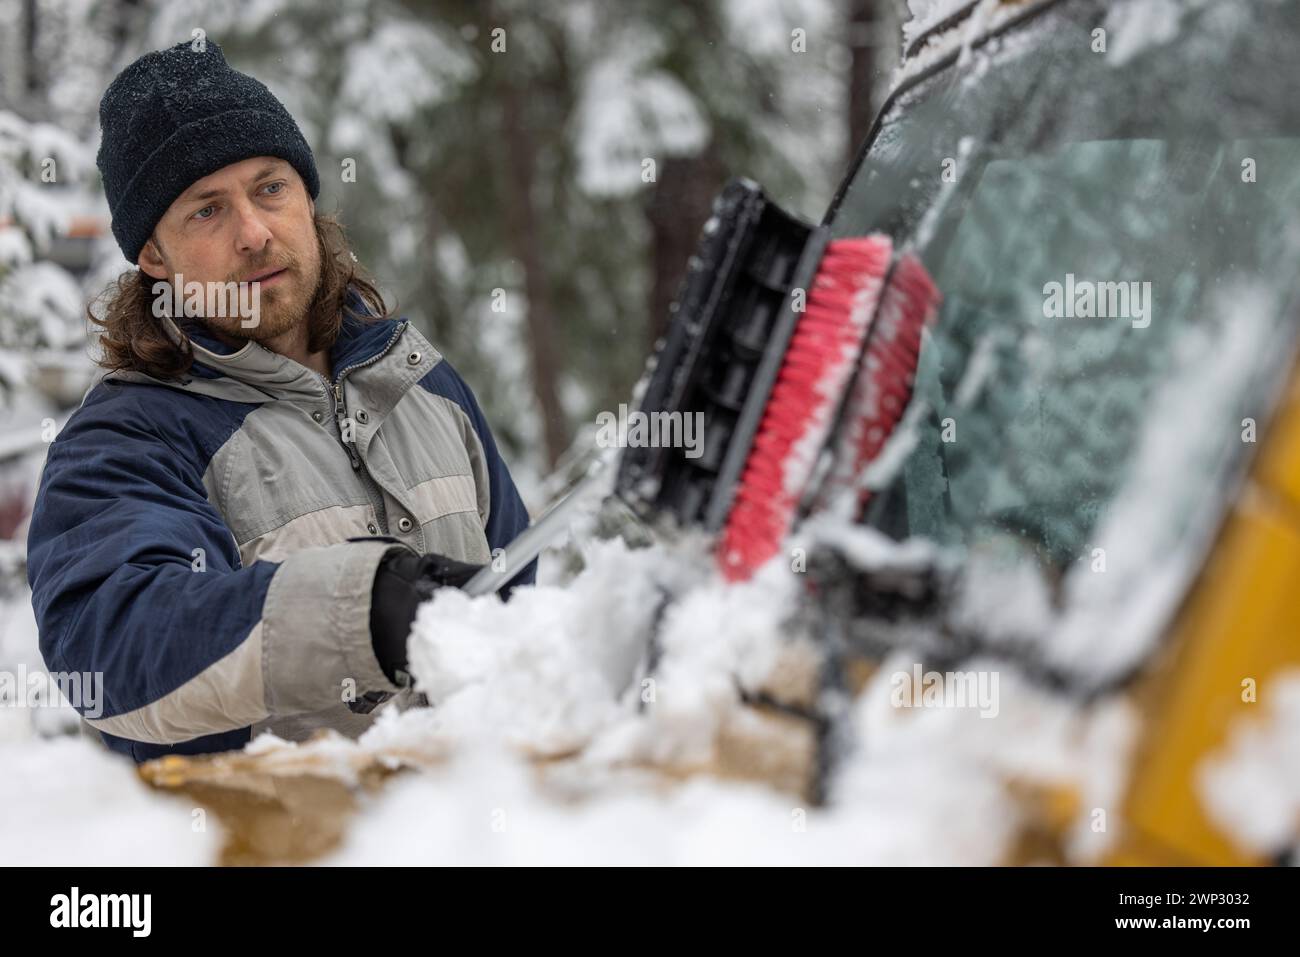 Ein Mann räumt Schnee von einem Autofenster. Der Mann trägt eine blaue Jacke und einen schwarzen Hut. Die Szene spielt in einer schneebedeckten Umgebung Stockfoto